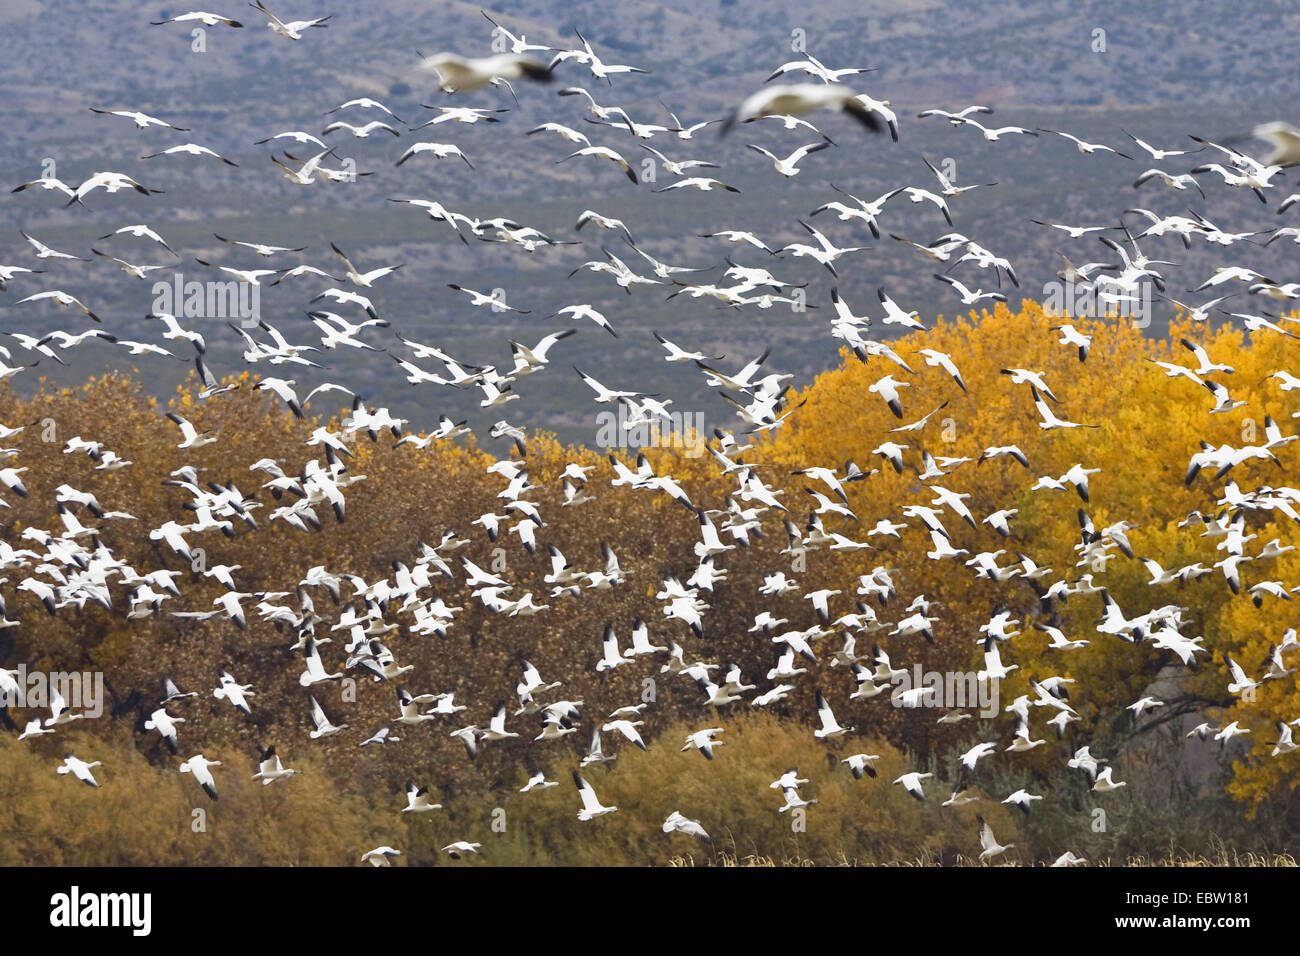 snow goose (Anser caerulescens atlanticus, Chen caerulescens atlanticus), flying flock in winter habitat, USA, New Mexico, Bosque del Apache Stock Photo